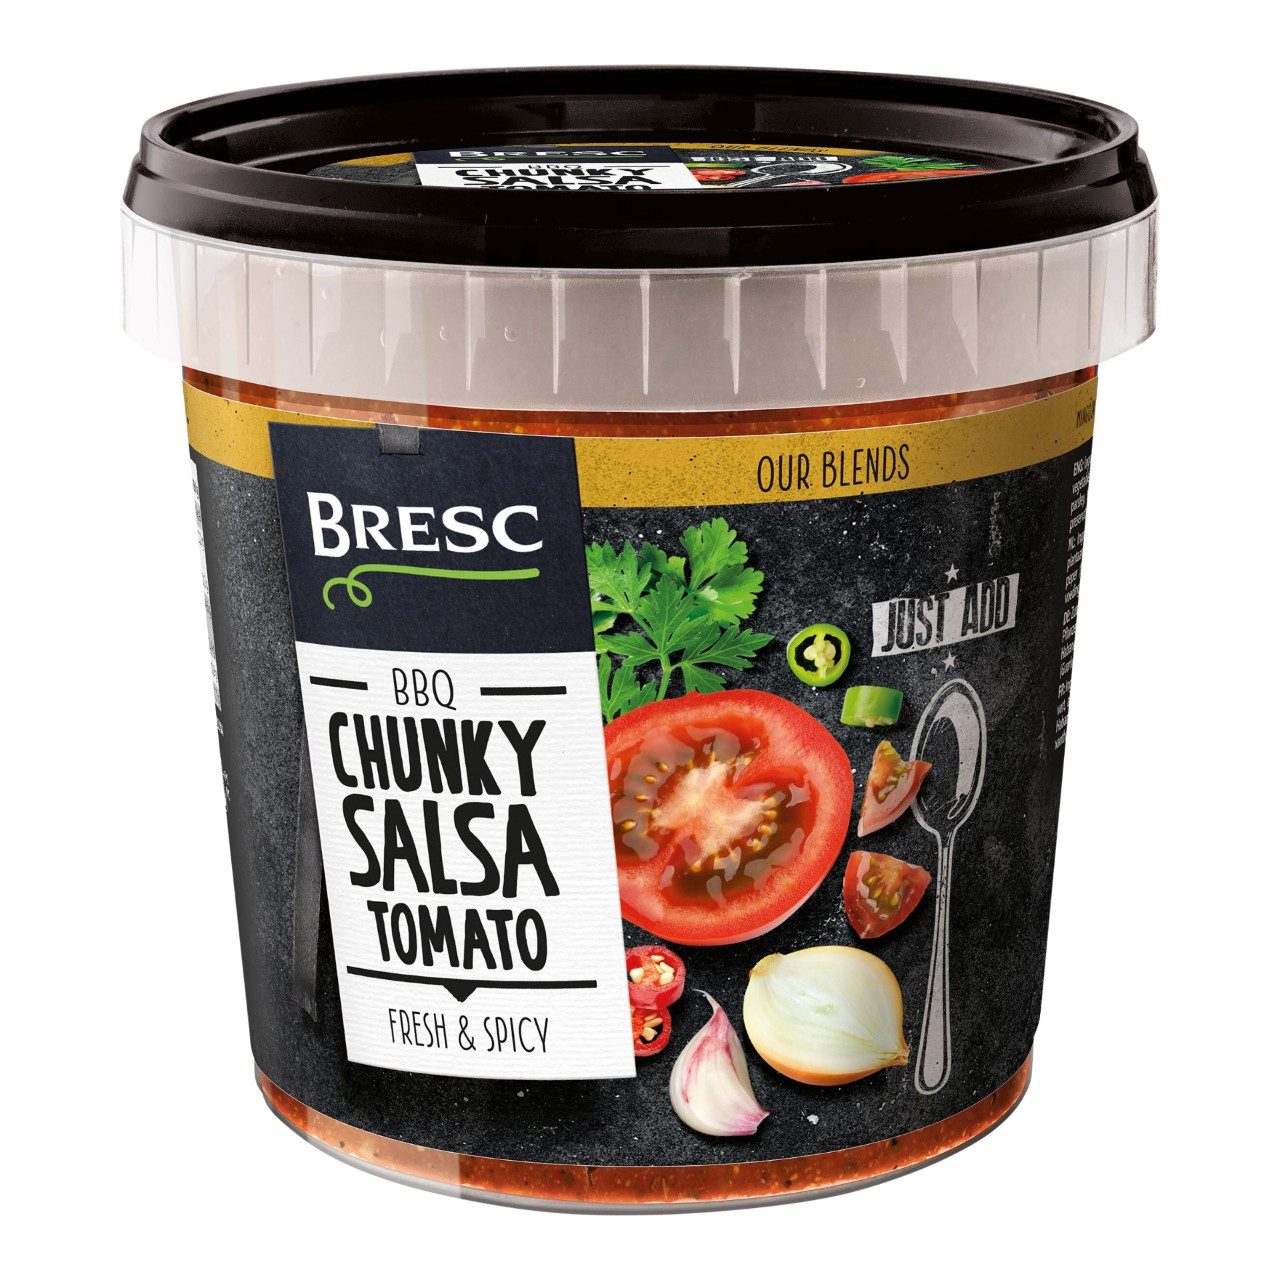 Chunky salsa tomato